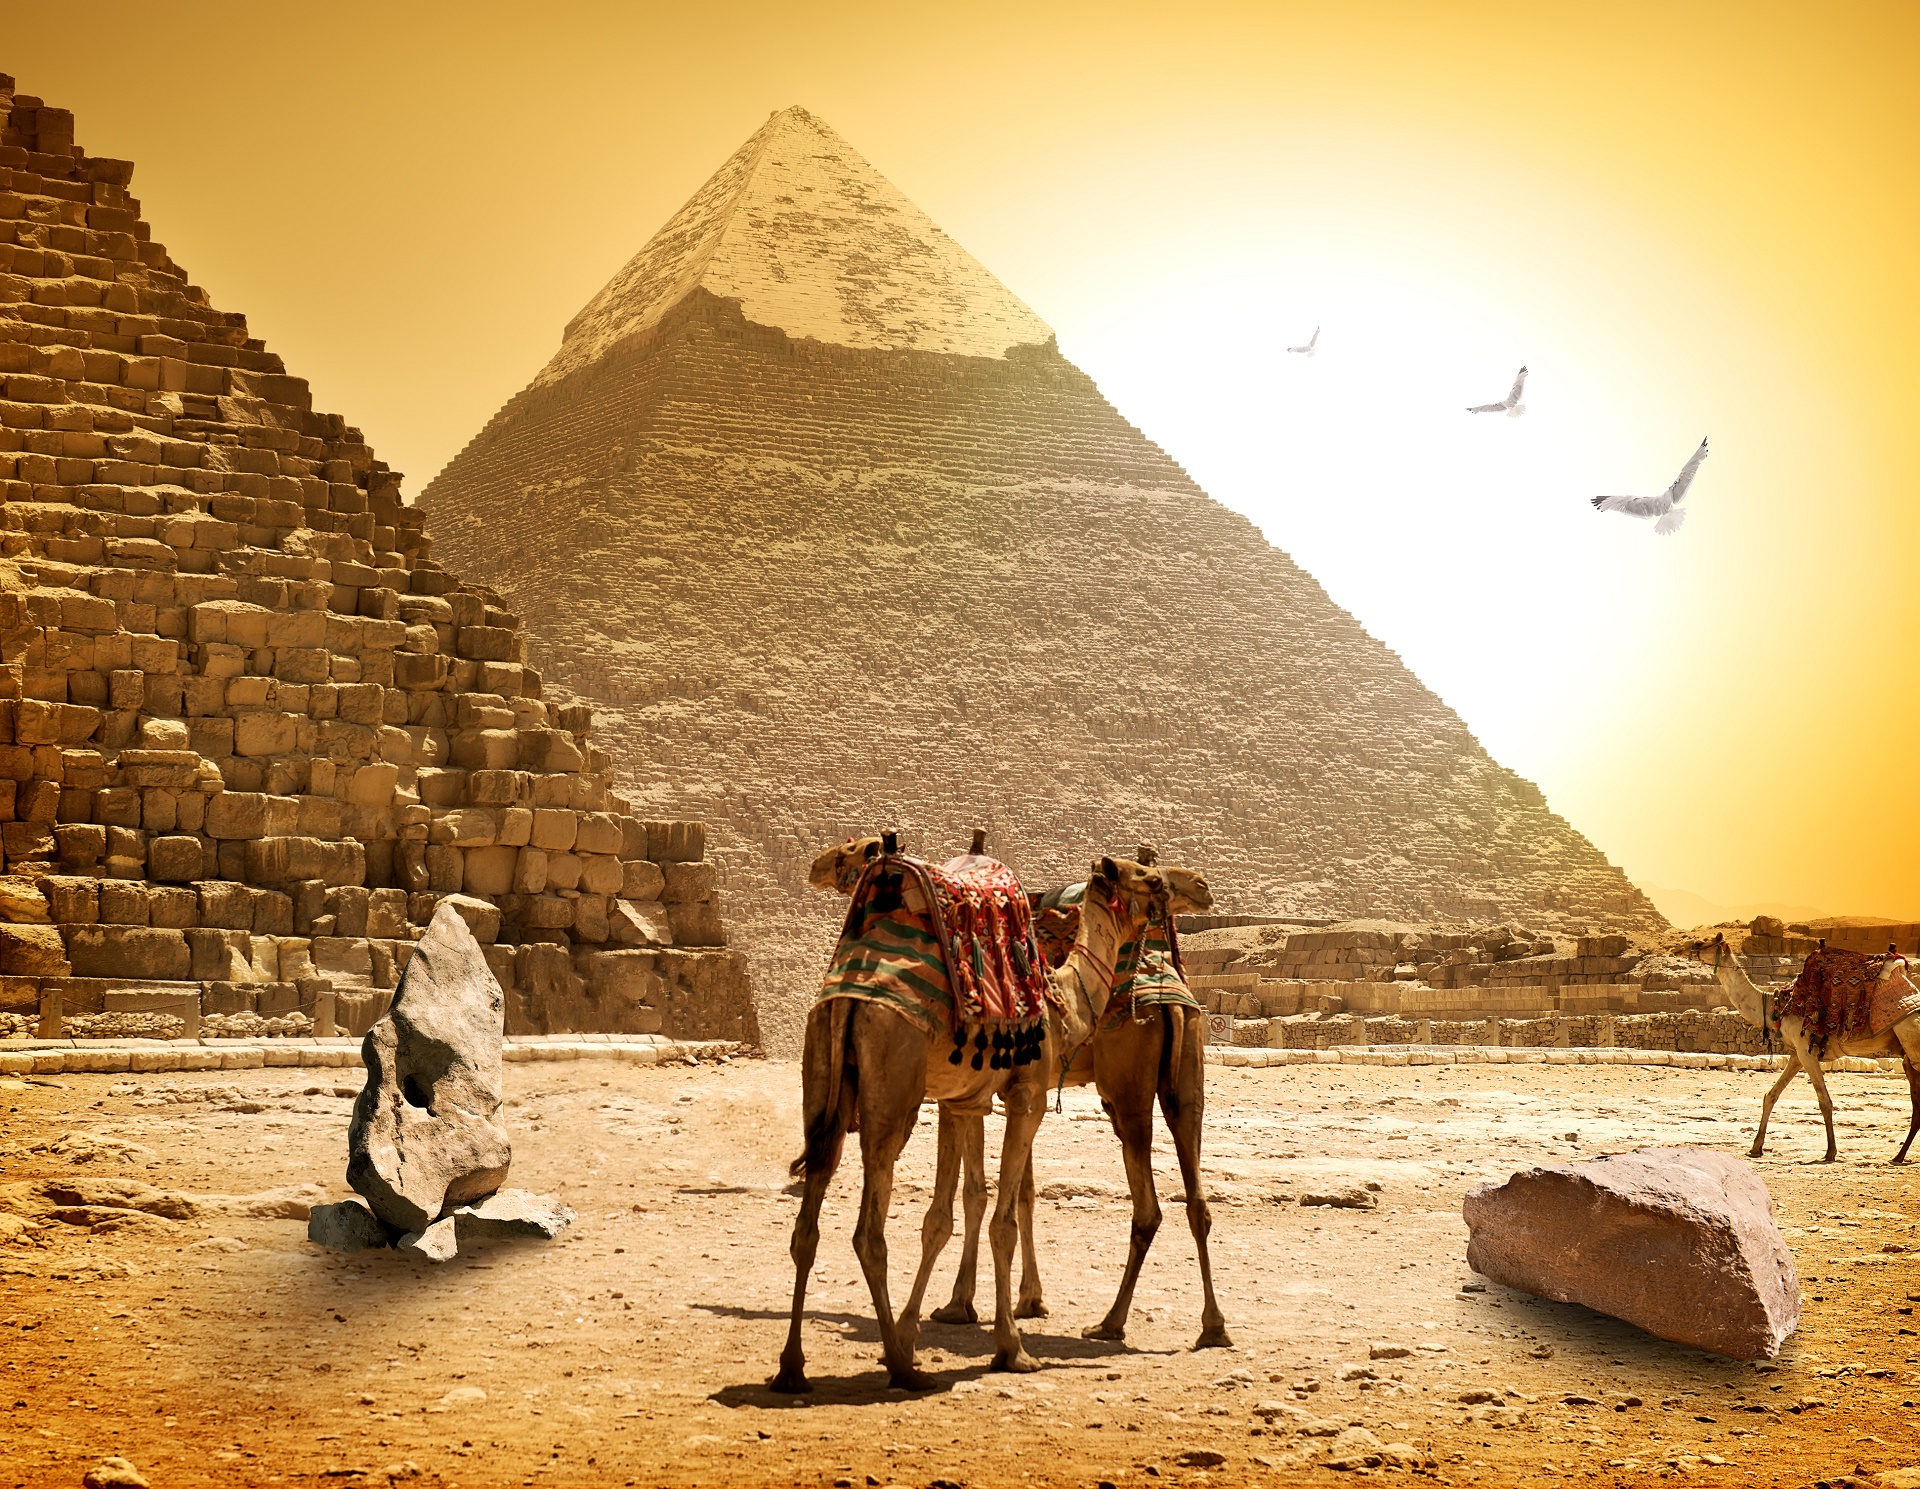 Египет фото с надписью египет